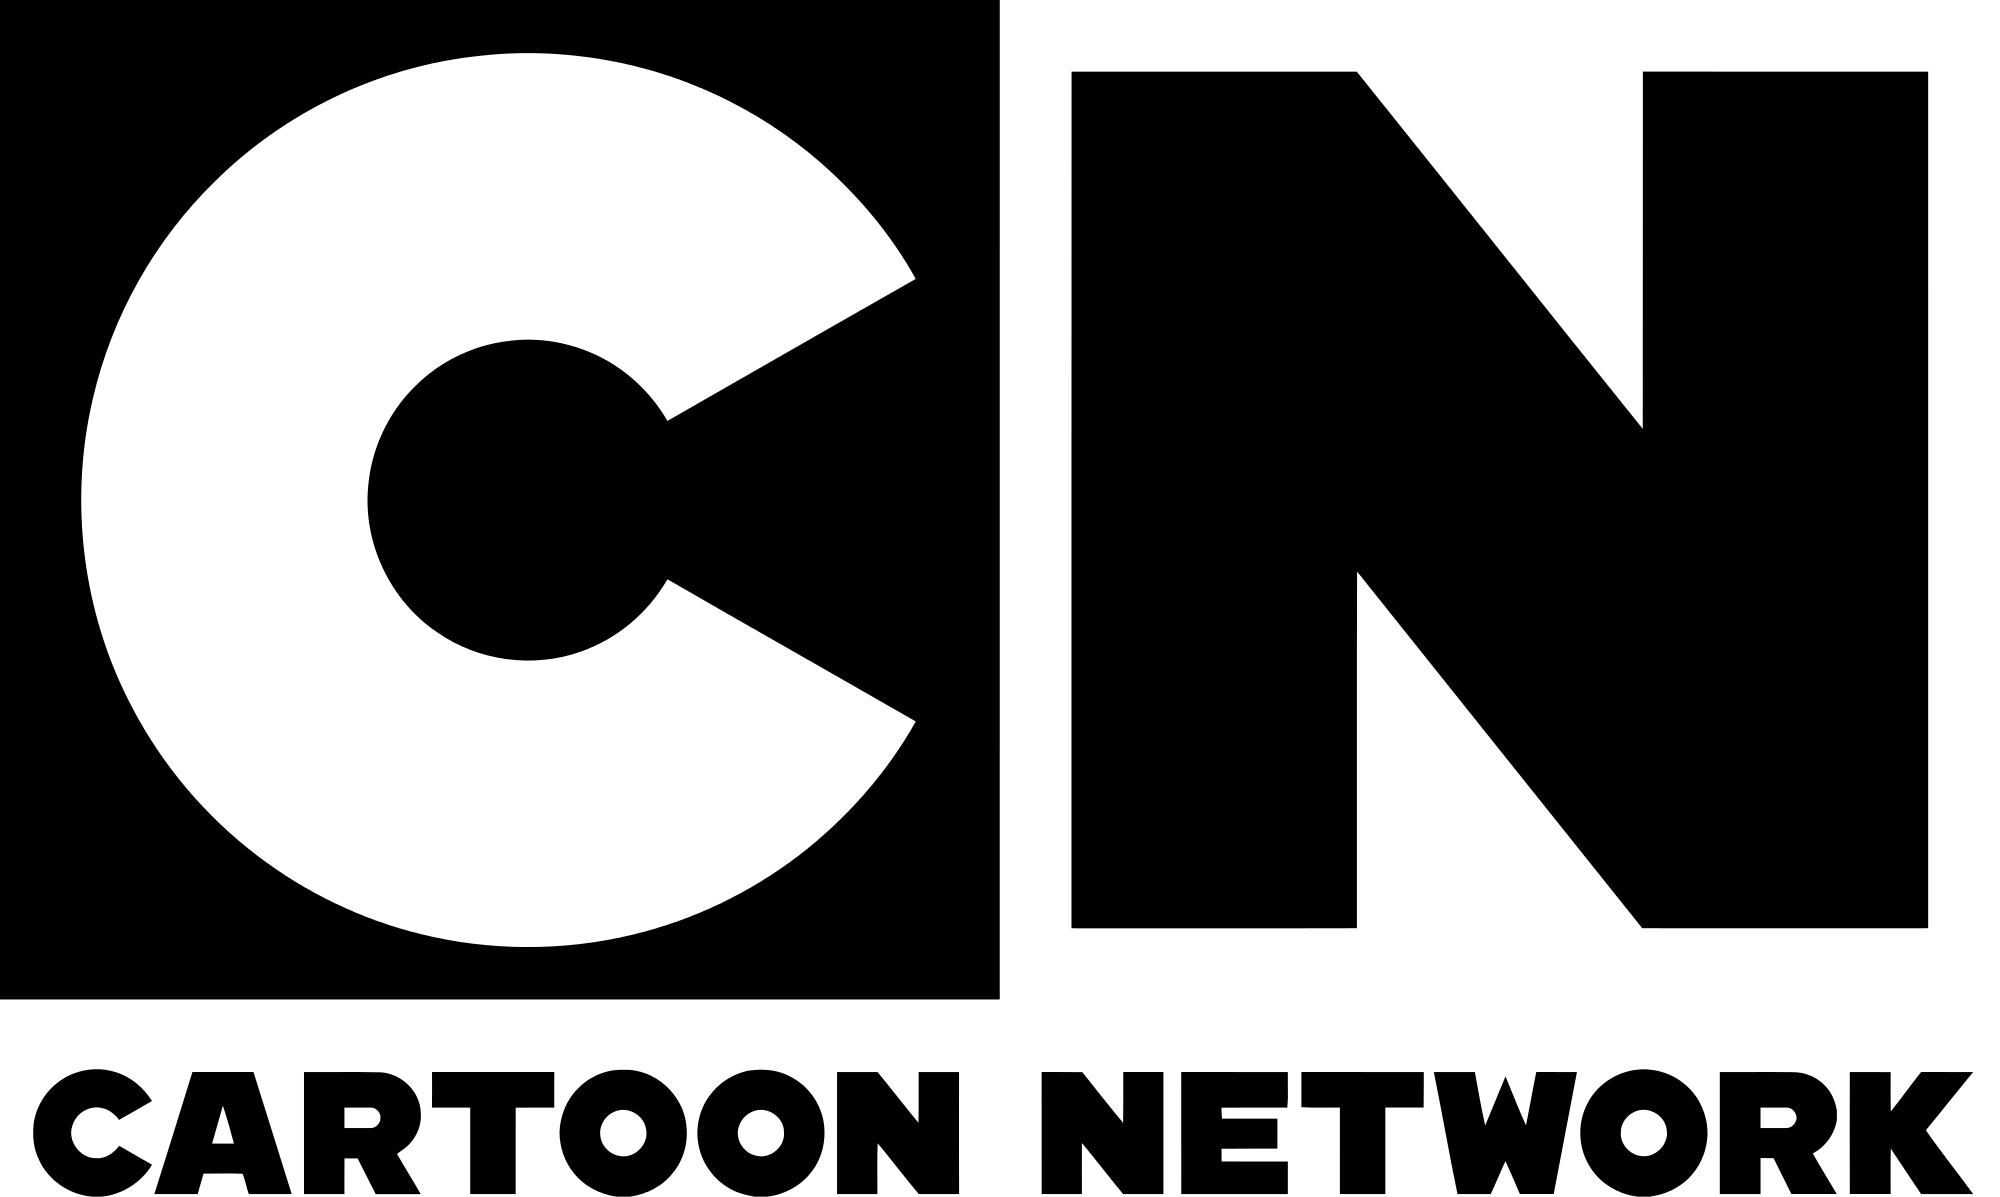 Cartoon Network - Wikipedia, the free encyclopedia